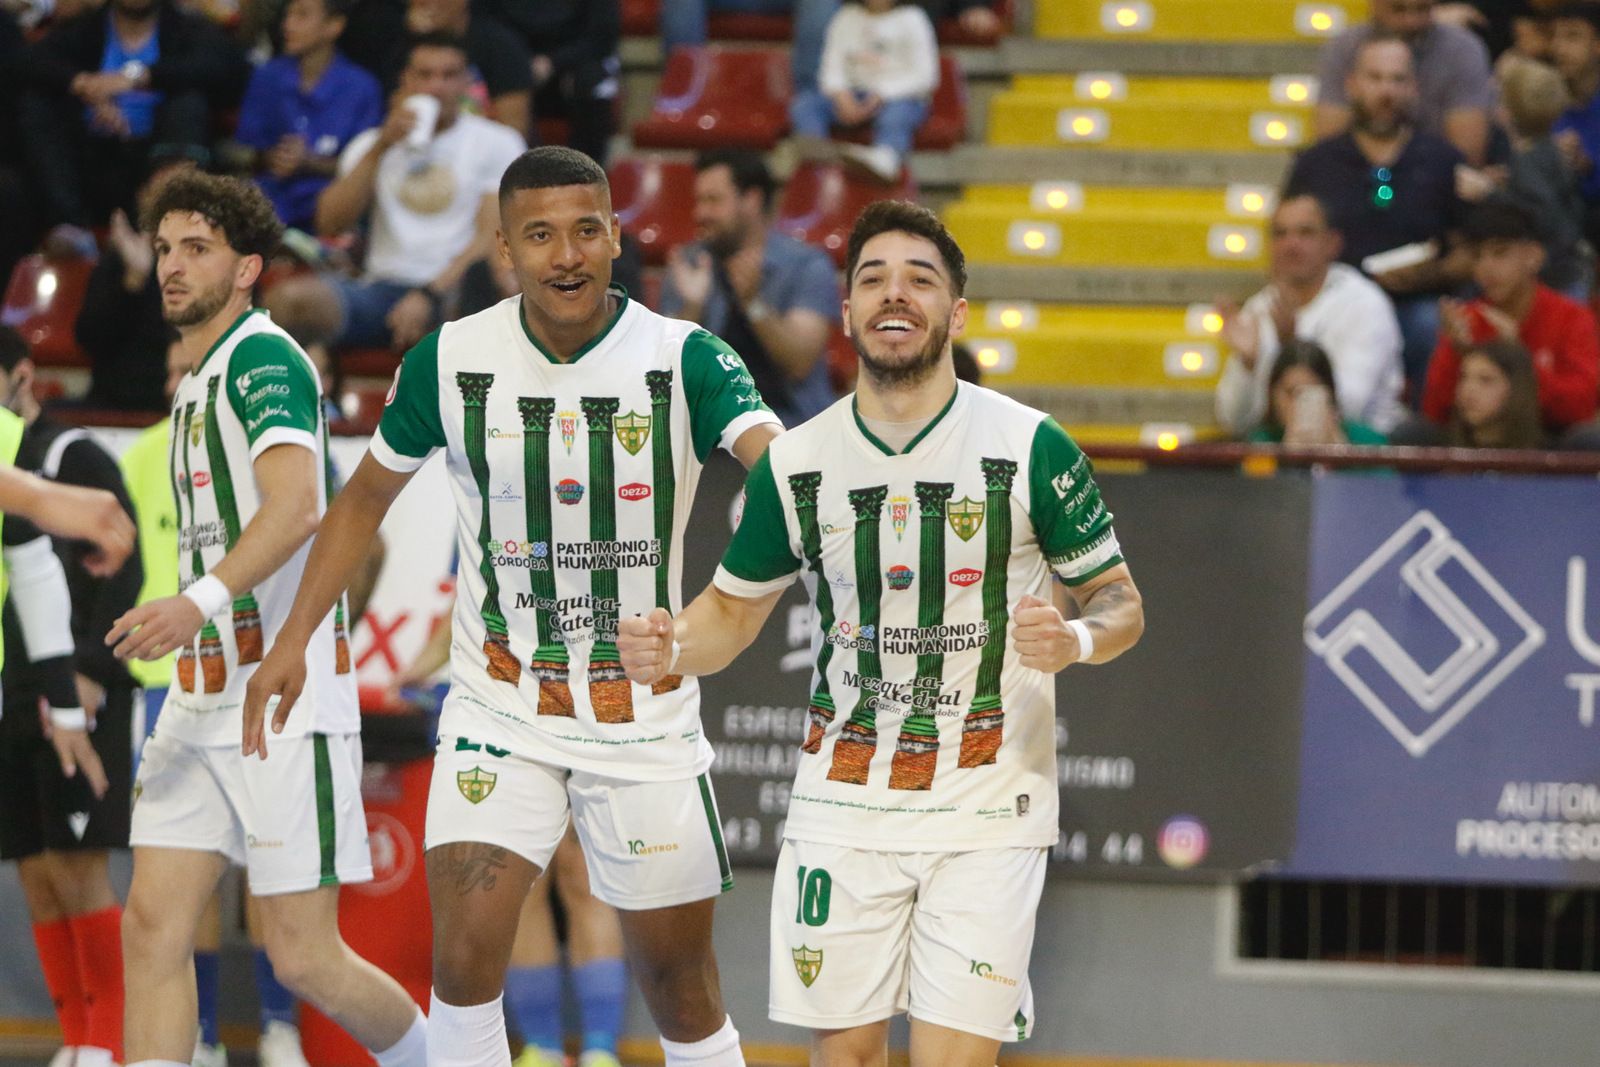 Córdoba Futsal-Peñiscola: el partído de Vista Alegre en imágenes